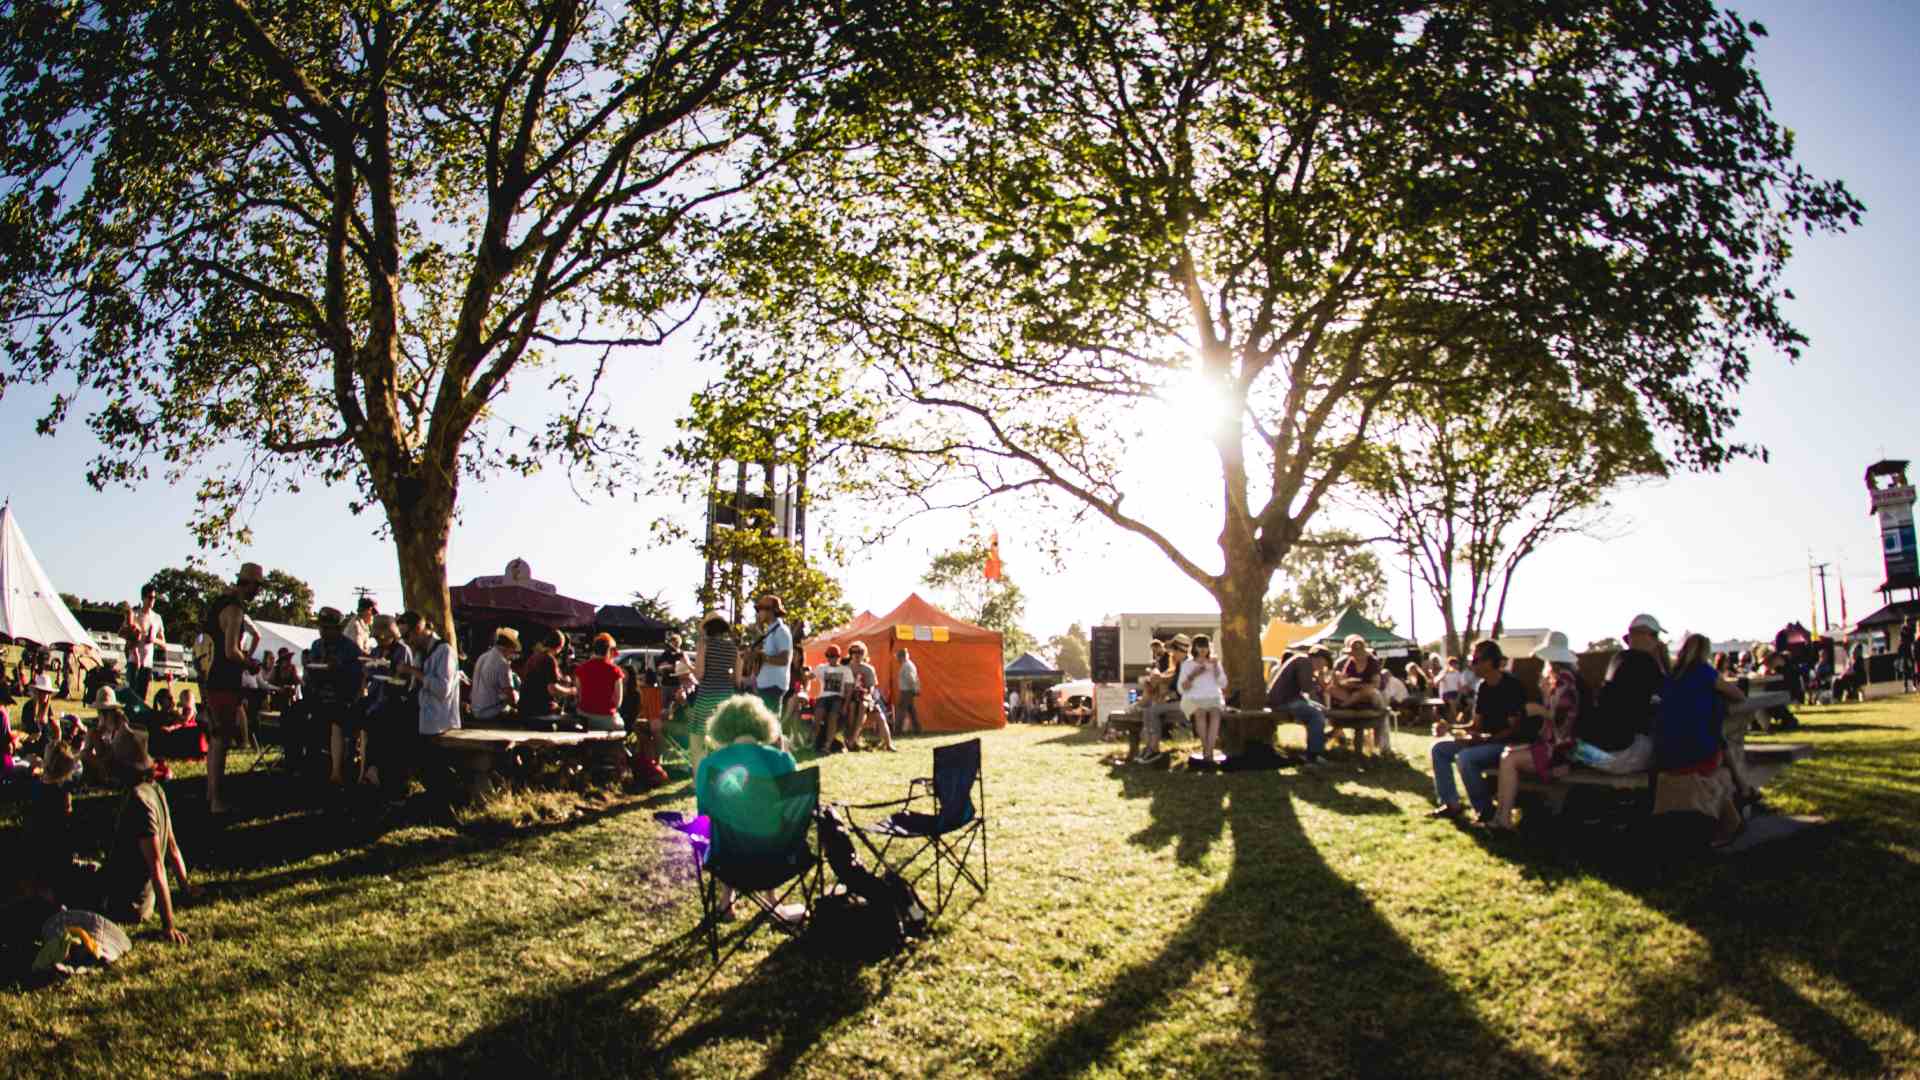 Auckland Folk Festival 2023